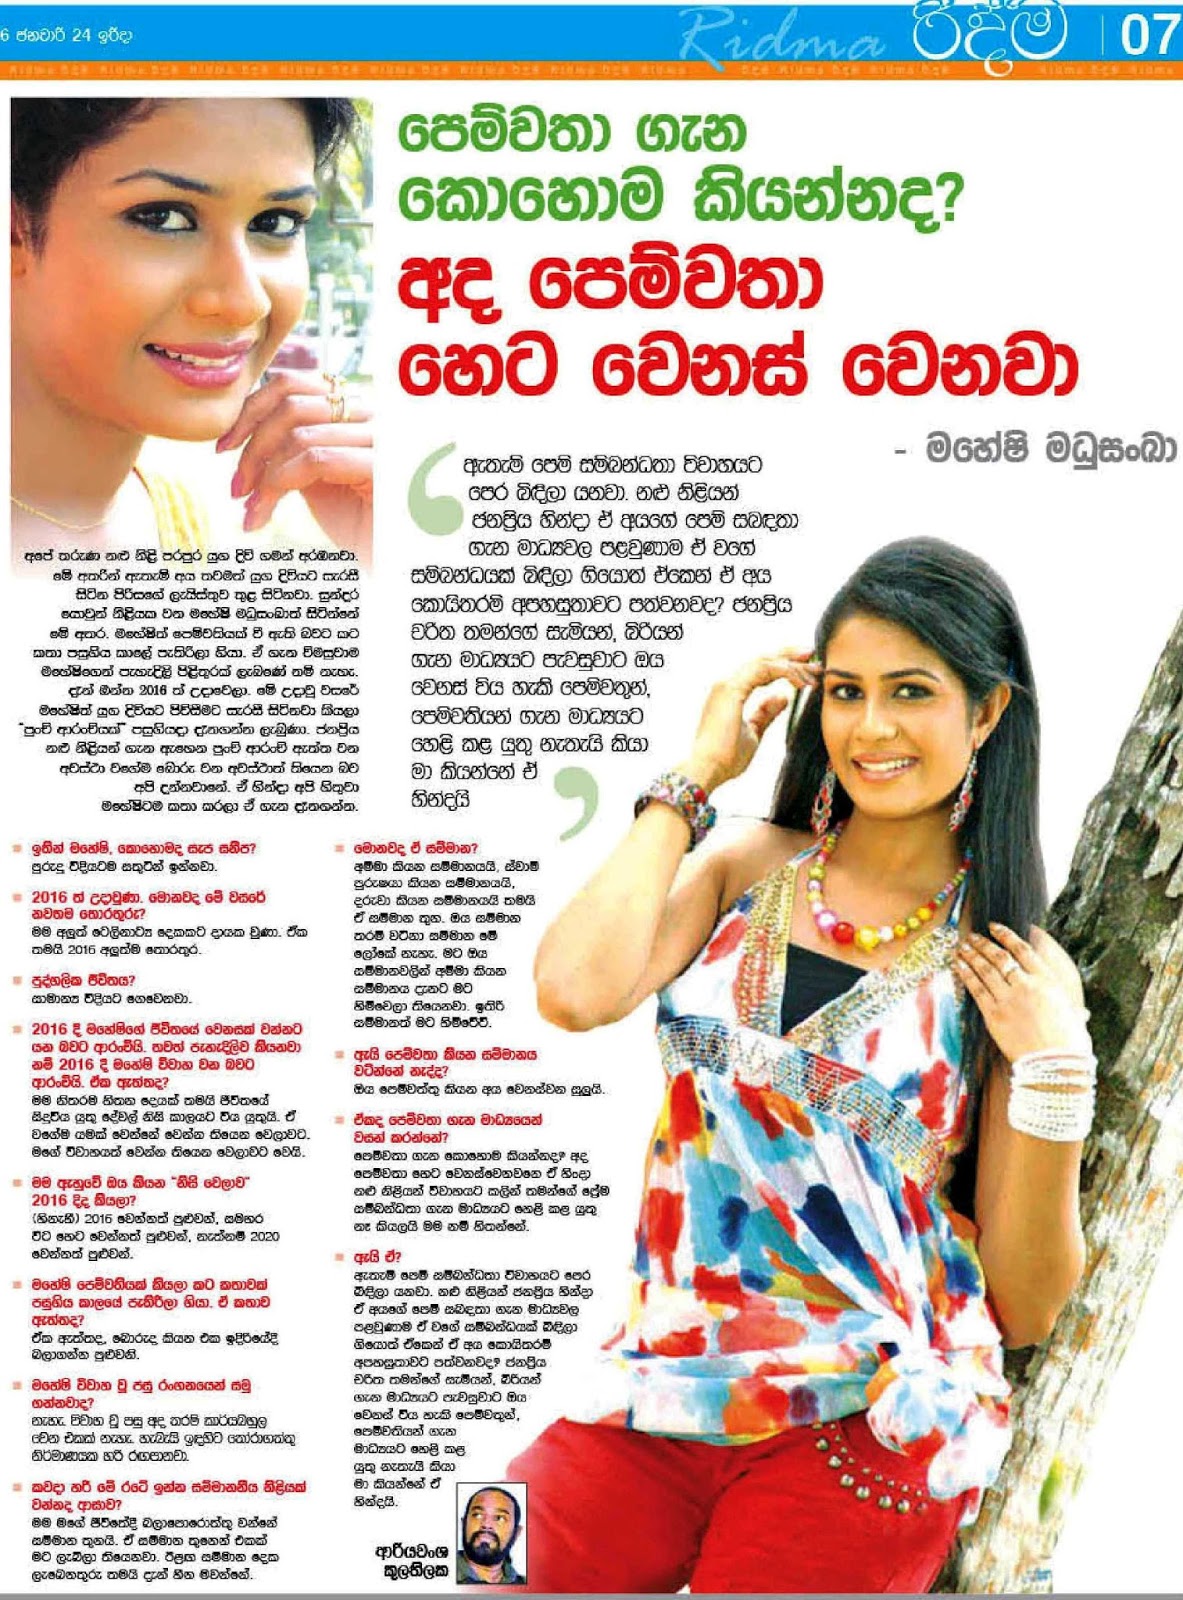 වෙනස් වෙන පෙම්වතා - Actress Maheshi Madushanka | Sri Lanka Newspaper ...